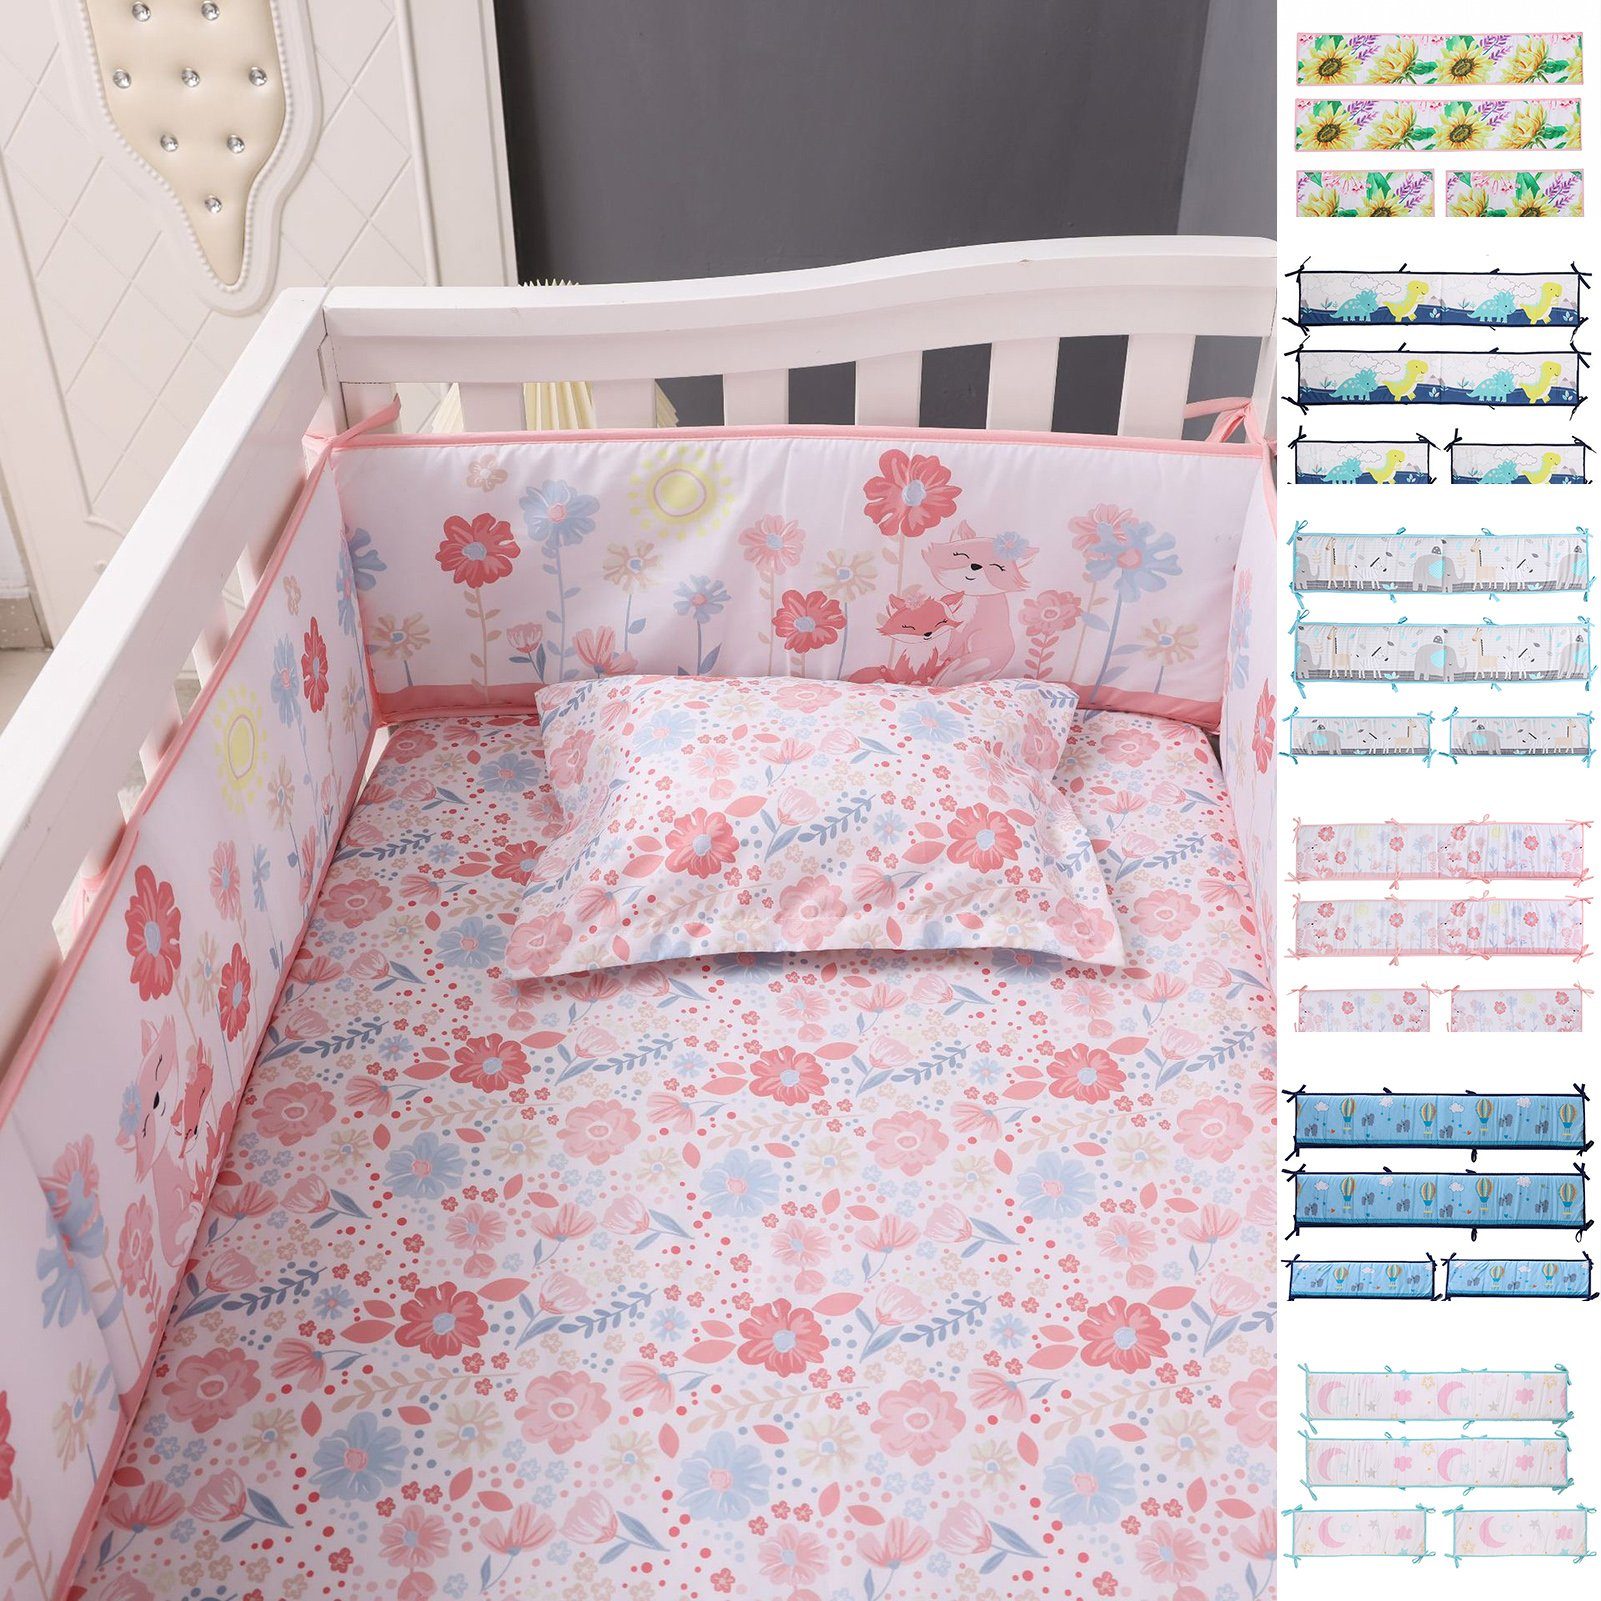 Soft Crib Kinderbetten Pad Stoßstangen Babybett für Kantenschutz Rutaqian